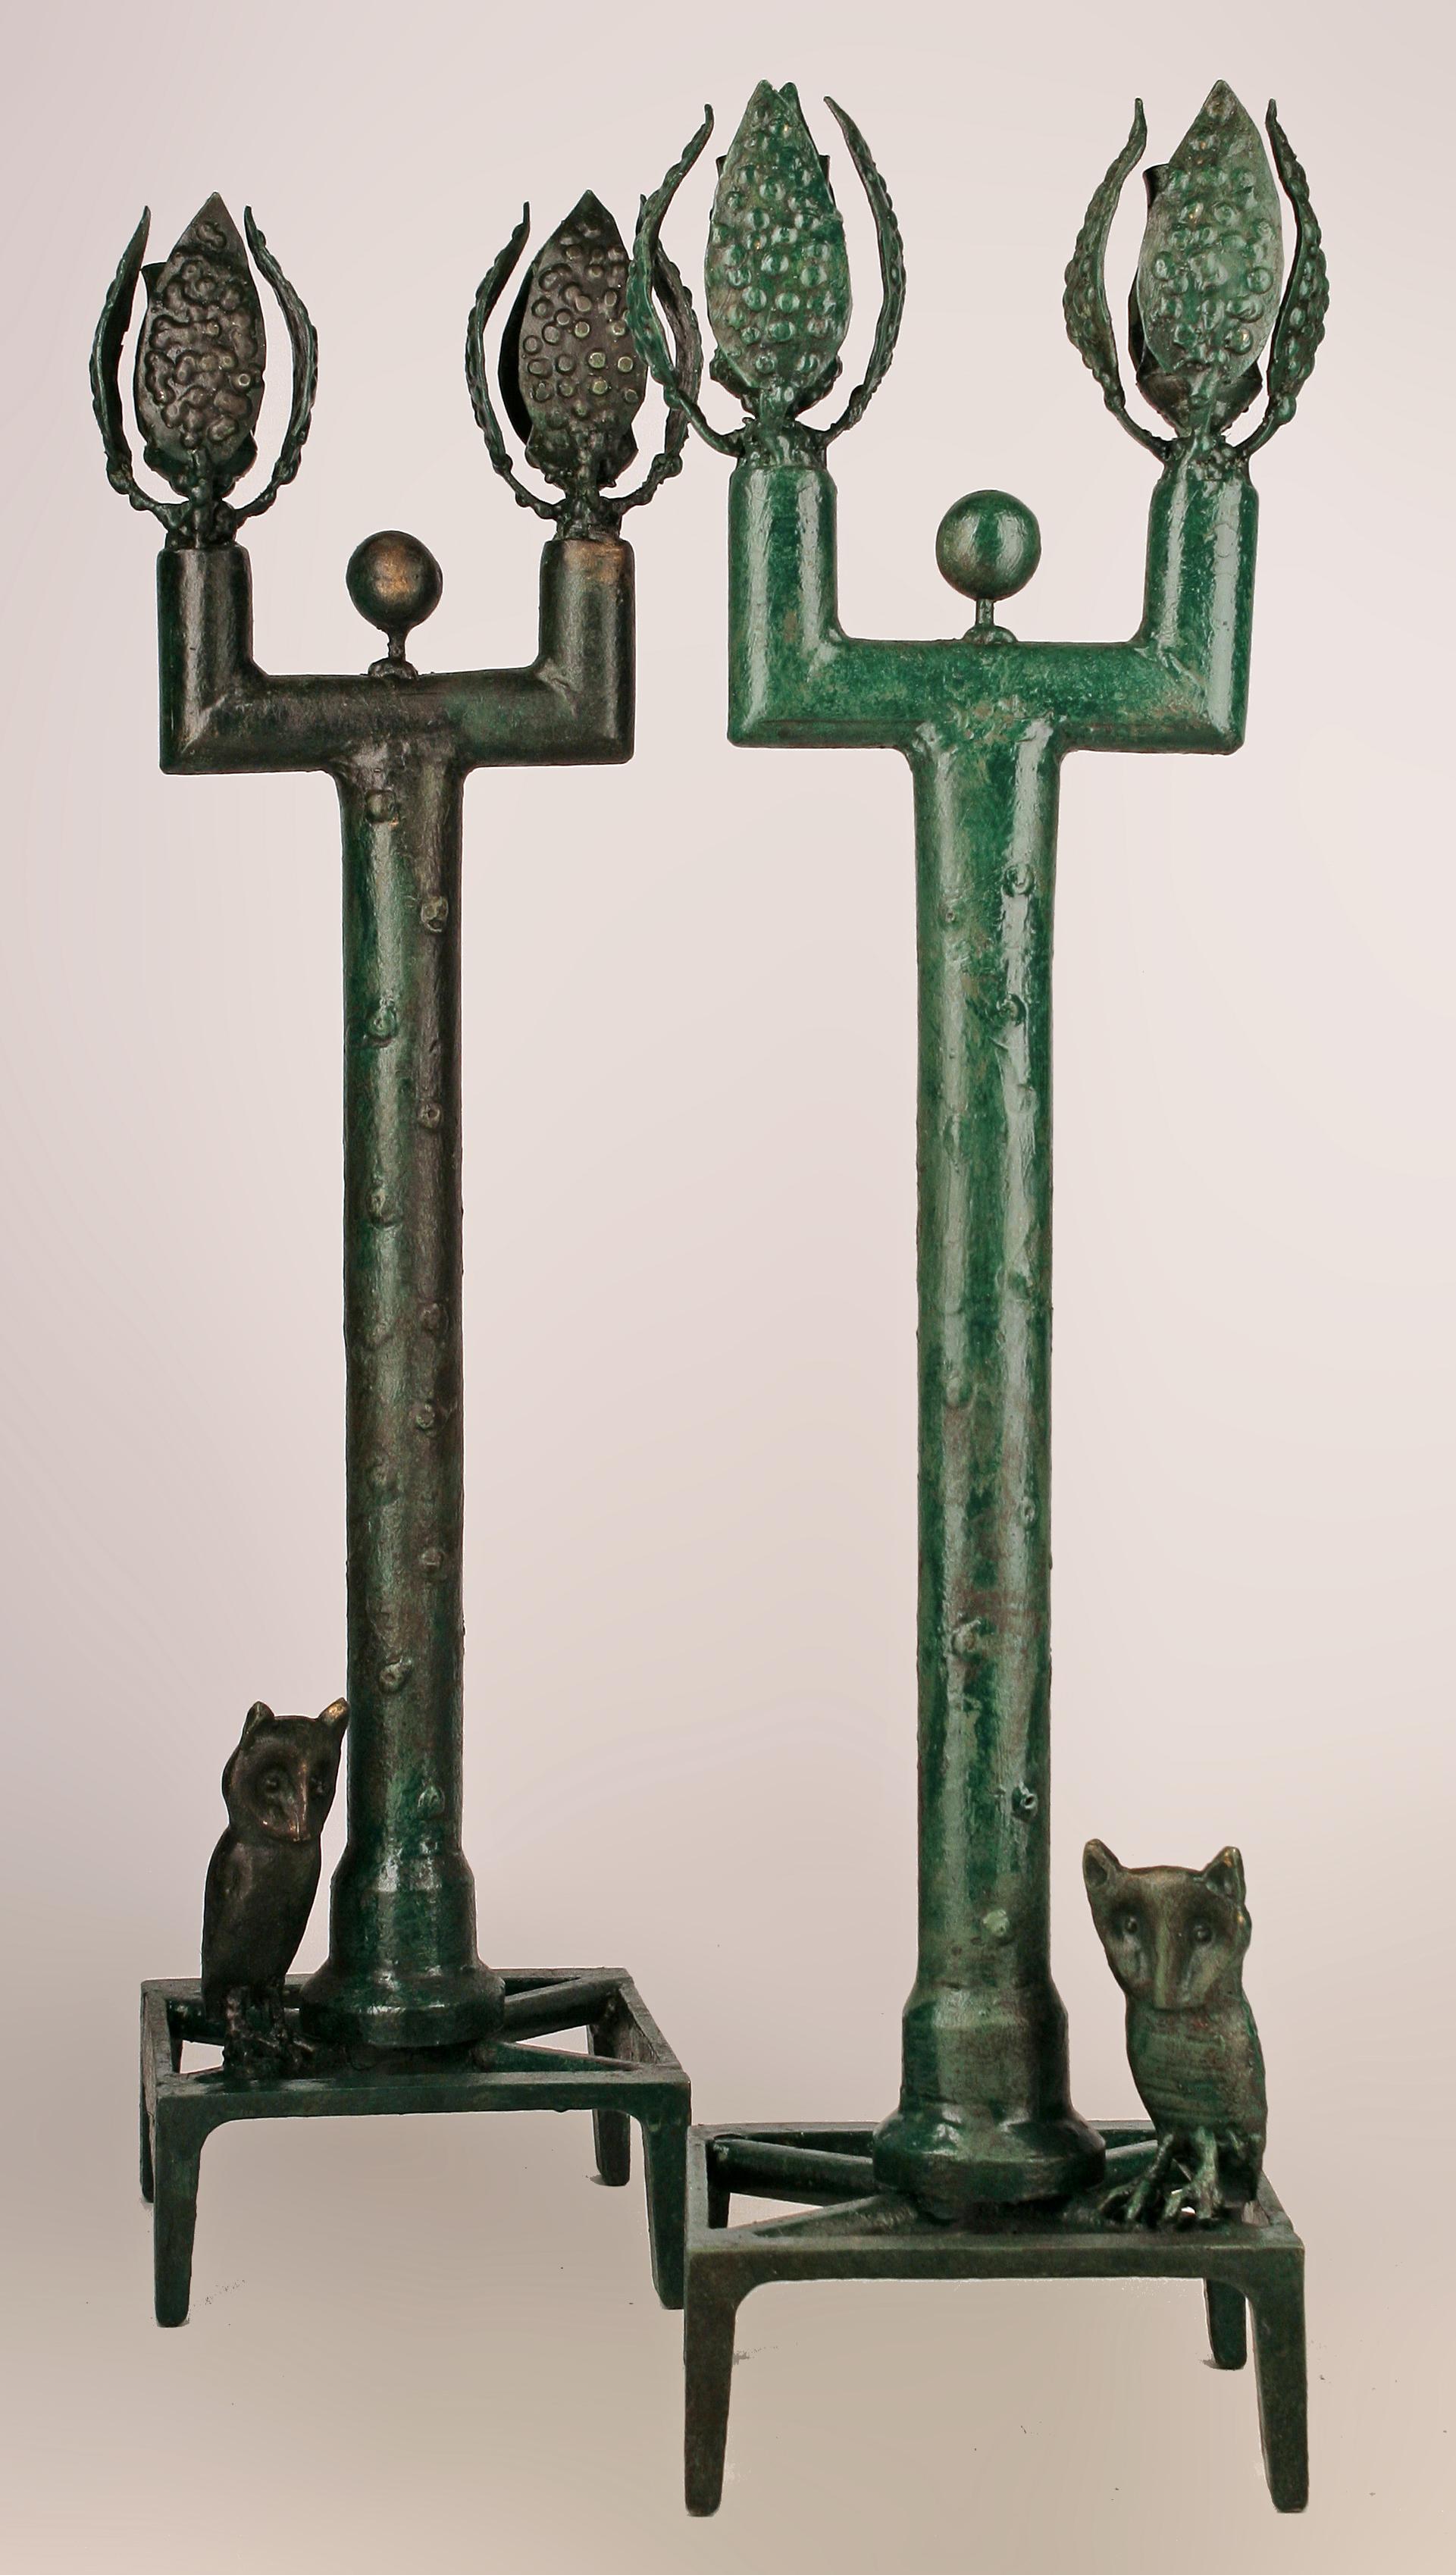 Expressionistisches Giacometti-Paar aus französischer Bronze vom Ende des 20.

von: Diego Giacometti (im Stil von)
MATERIAL: Bronze, Kupfer, Metall
Technik: gegossen, patiniert, geformt, Metallbearbeitung
Abmessungen: 6 in x 6 in x 22 in
Datum: Ende